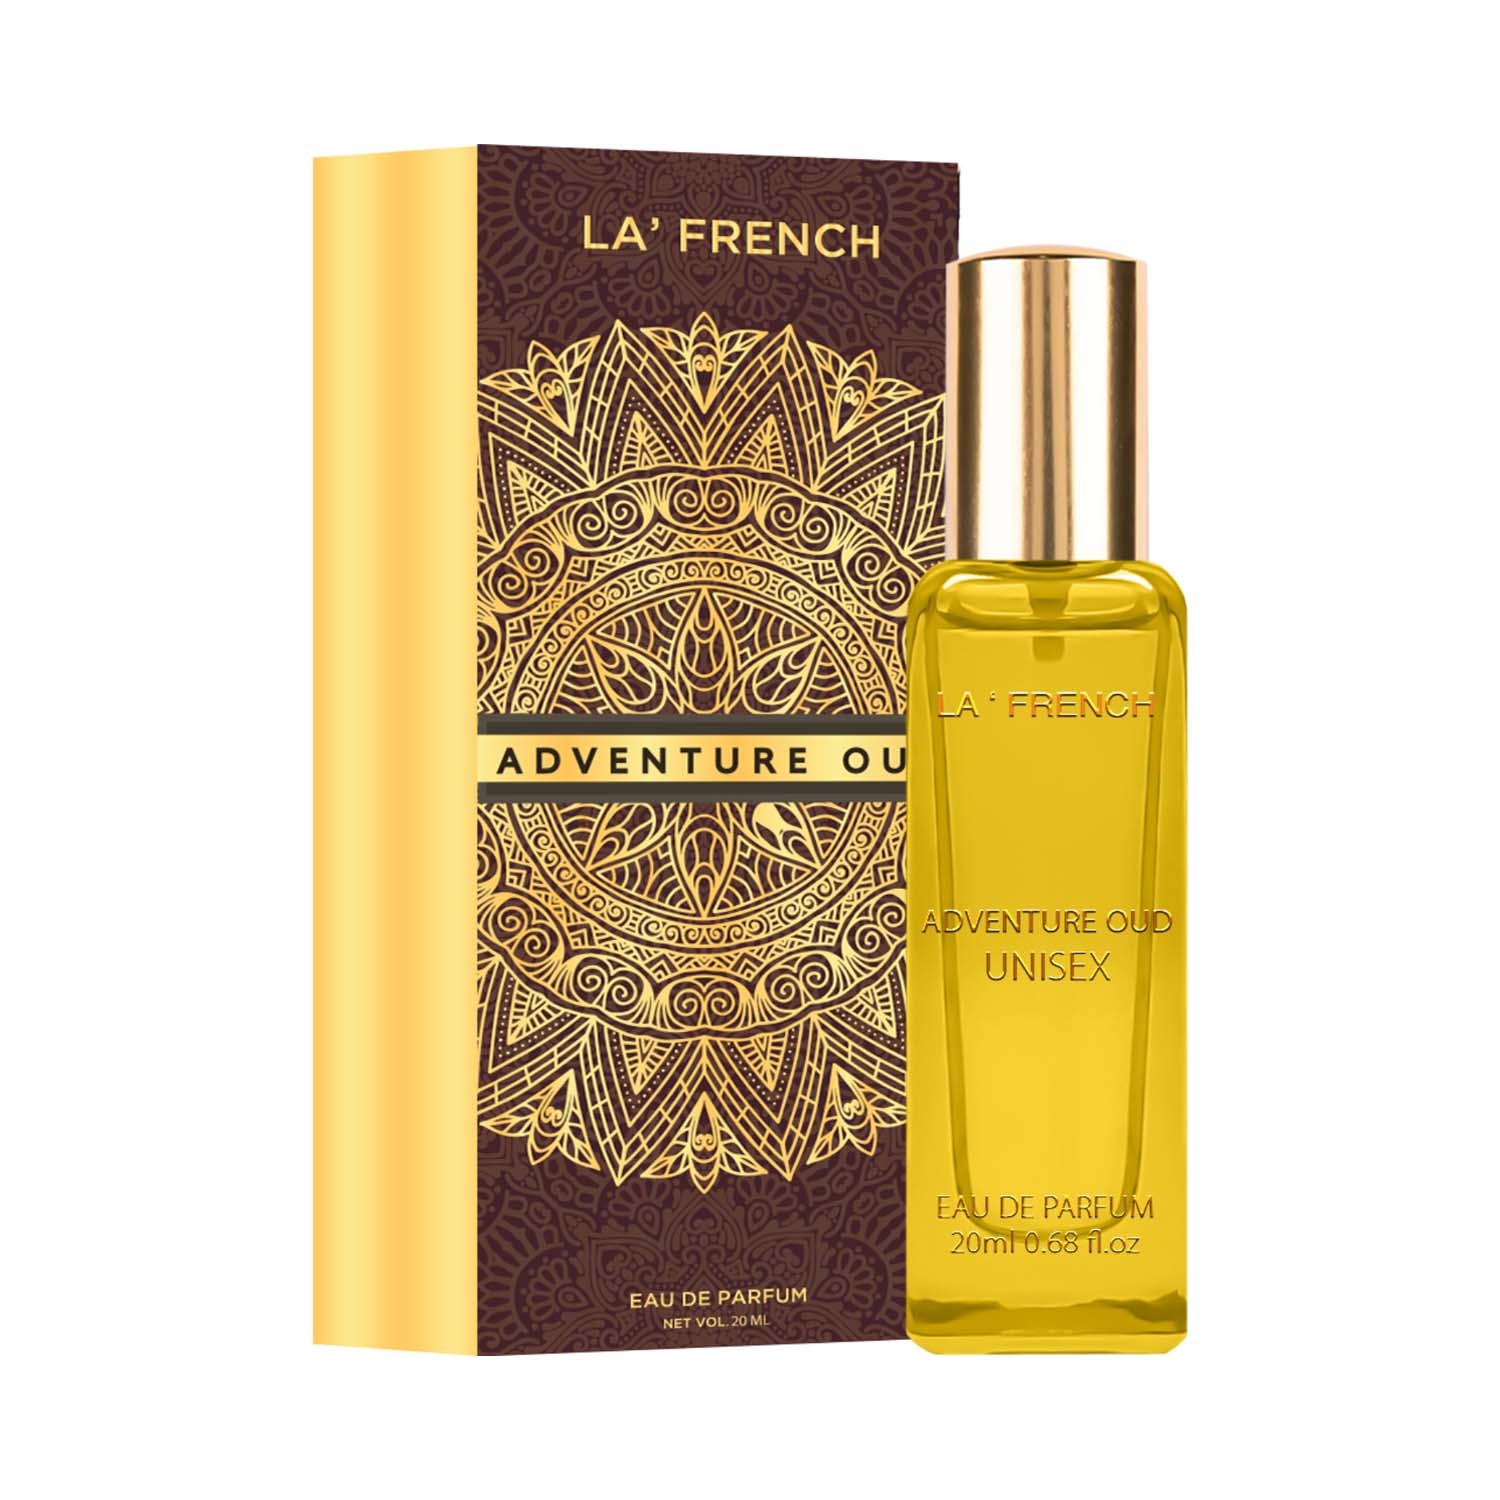 LA' French | LA' French Adventure Oud Eau De Parfum (20ml)